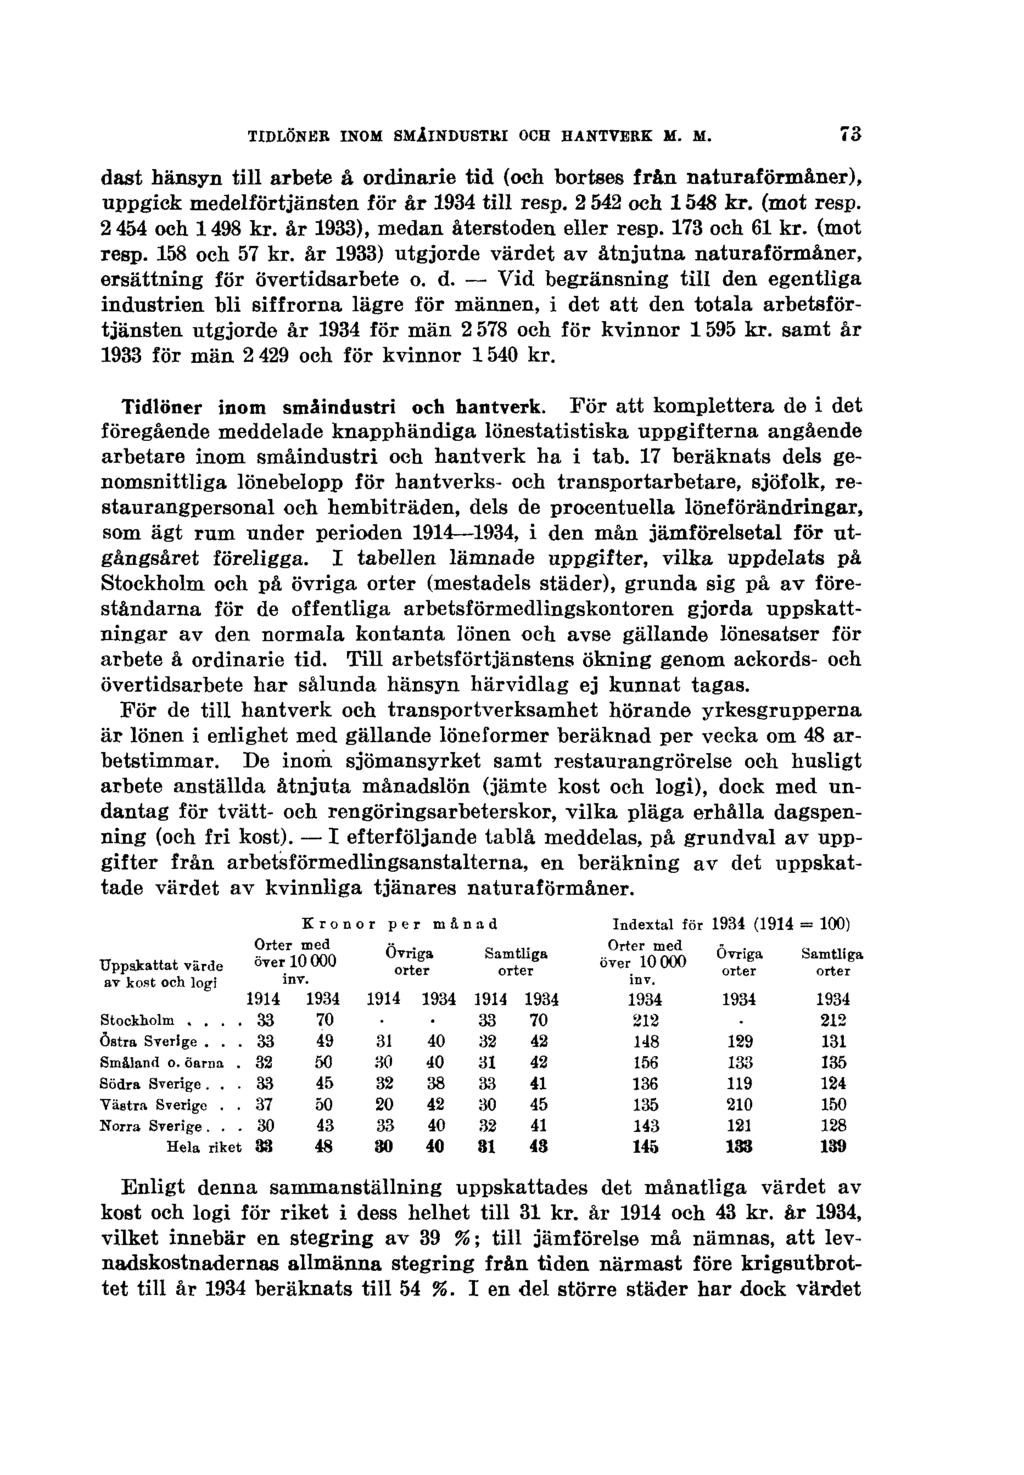 TIDLÖNER INOM SMÅINDUSTRI OCH HANTVERK M. M. dast hänsyn till arbete å ordinarie tid (oeh bortses från naturaförmåner), uppgick medelförtjänsten för år 1934 till resp. 2 542 och 1548 kr. (mot resp.